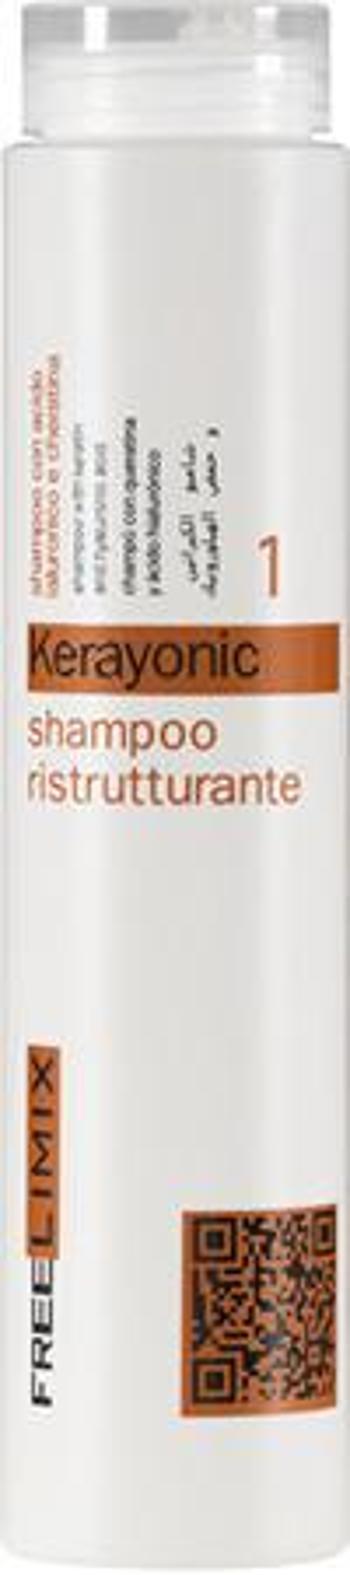 Freelimix Rekonstrukční šampon na vlasy Kerayonic (Shampoo) 250 ml